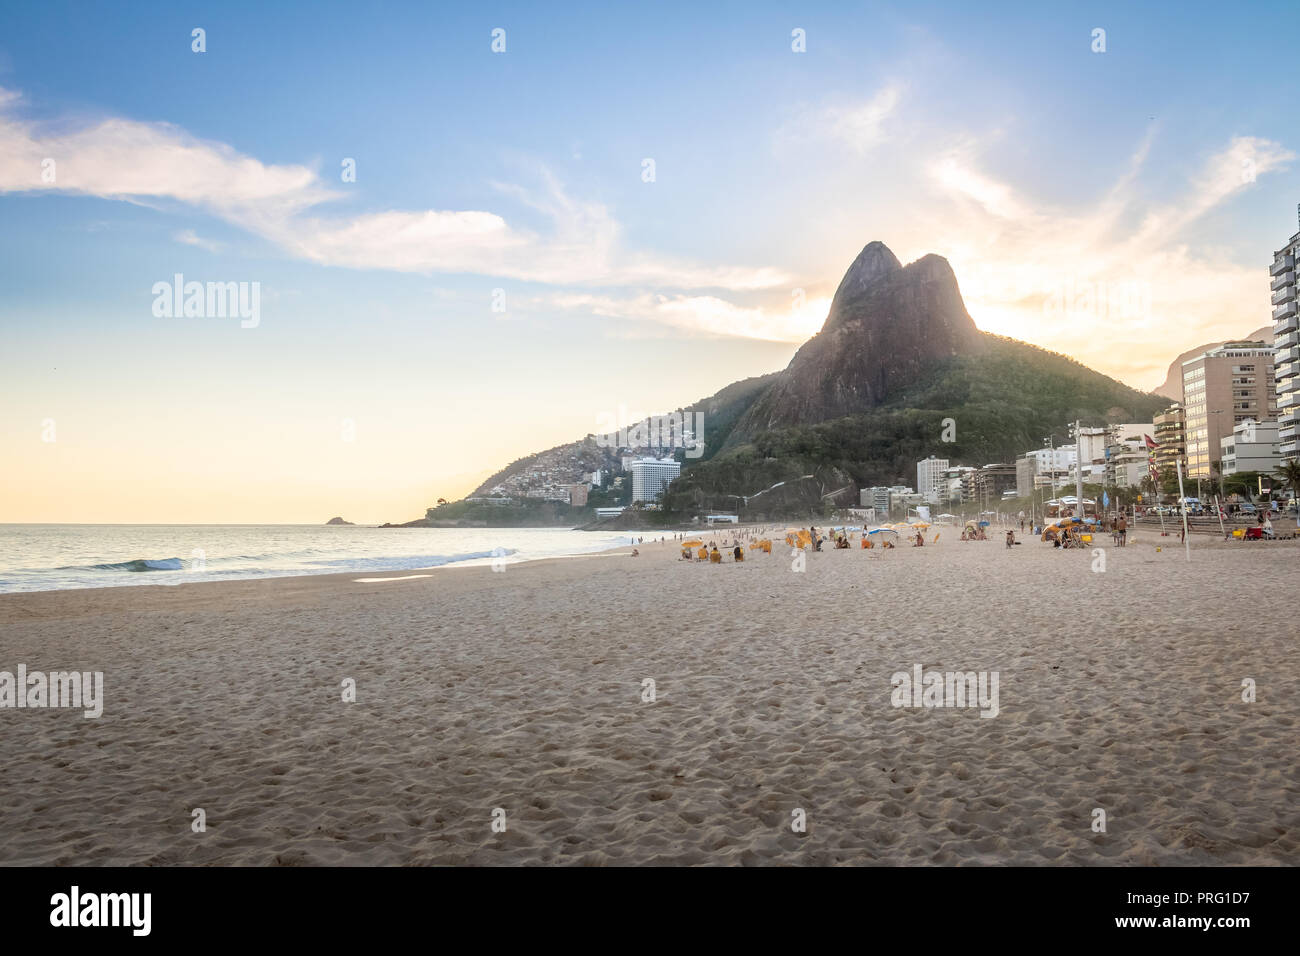 Leblon Beach and Two Brothers (Dois Irmaos) Mountain - Rio de Janeiro, Brazil Stock Photo